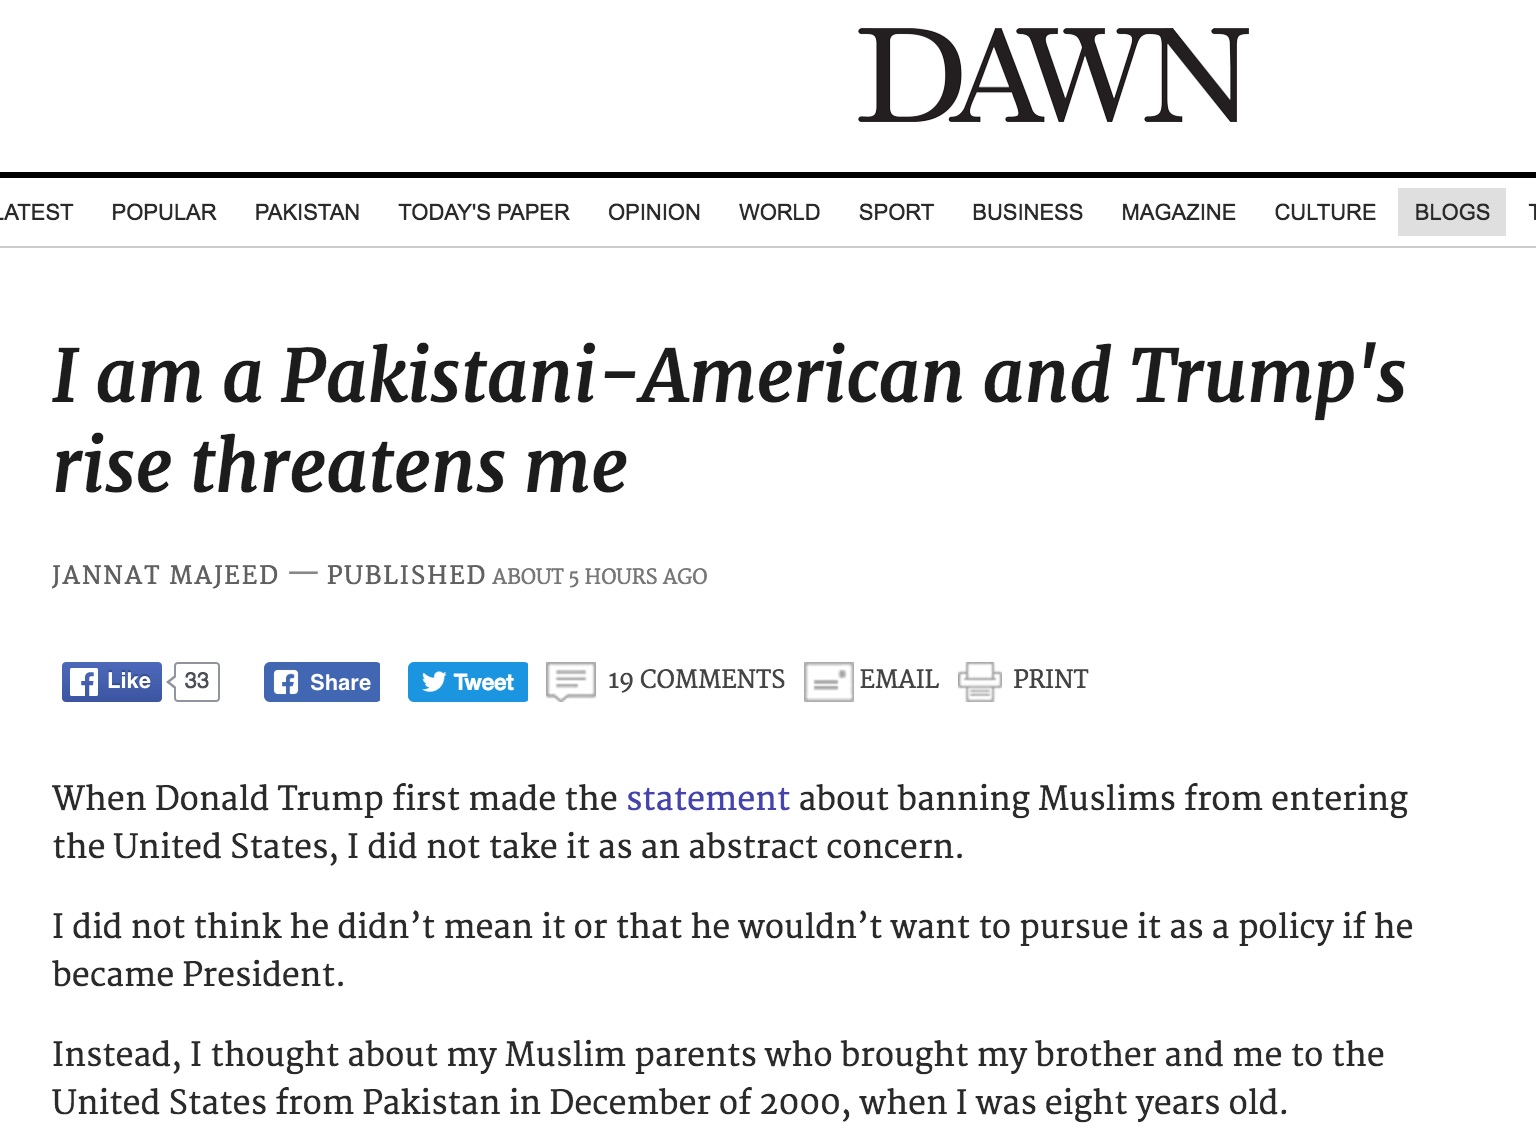 Les Américains d'origine pakistanaise s'inquiètent de voir Donald Trump attiser un sentiment islamophobe aux Etats-Unis. Copie d'écran du Dawn, le 10 octobre 2016.